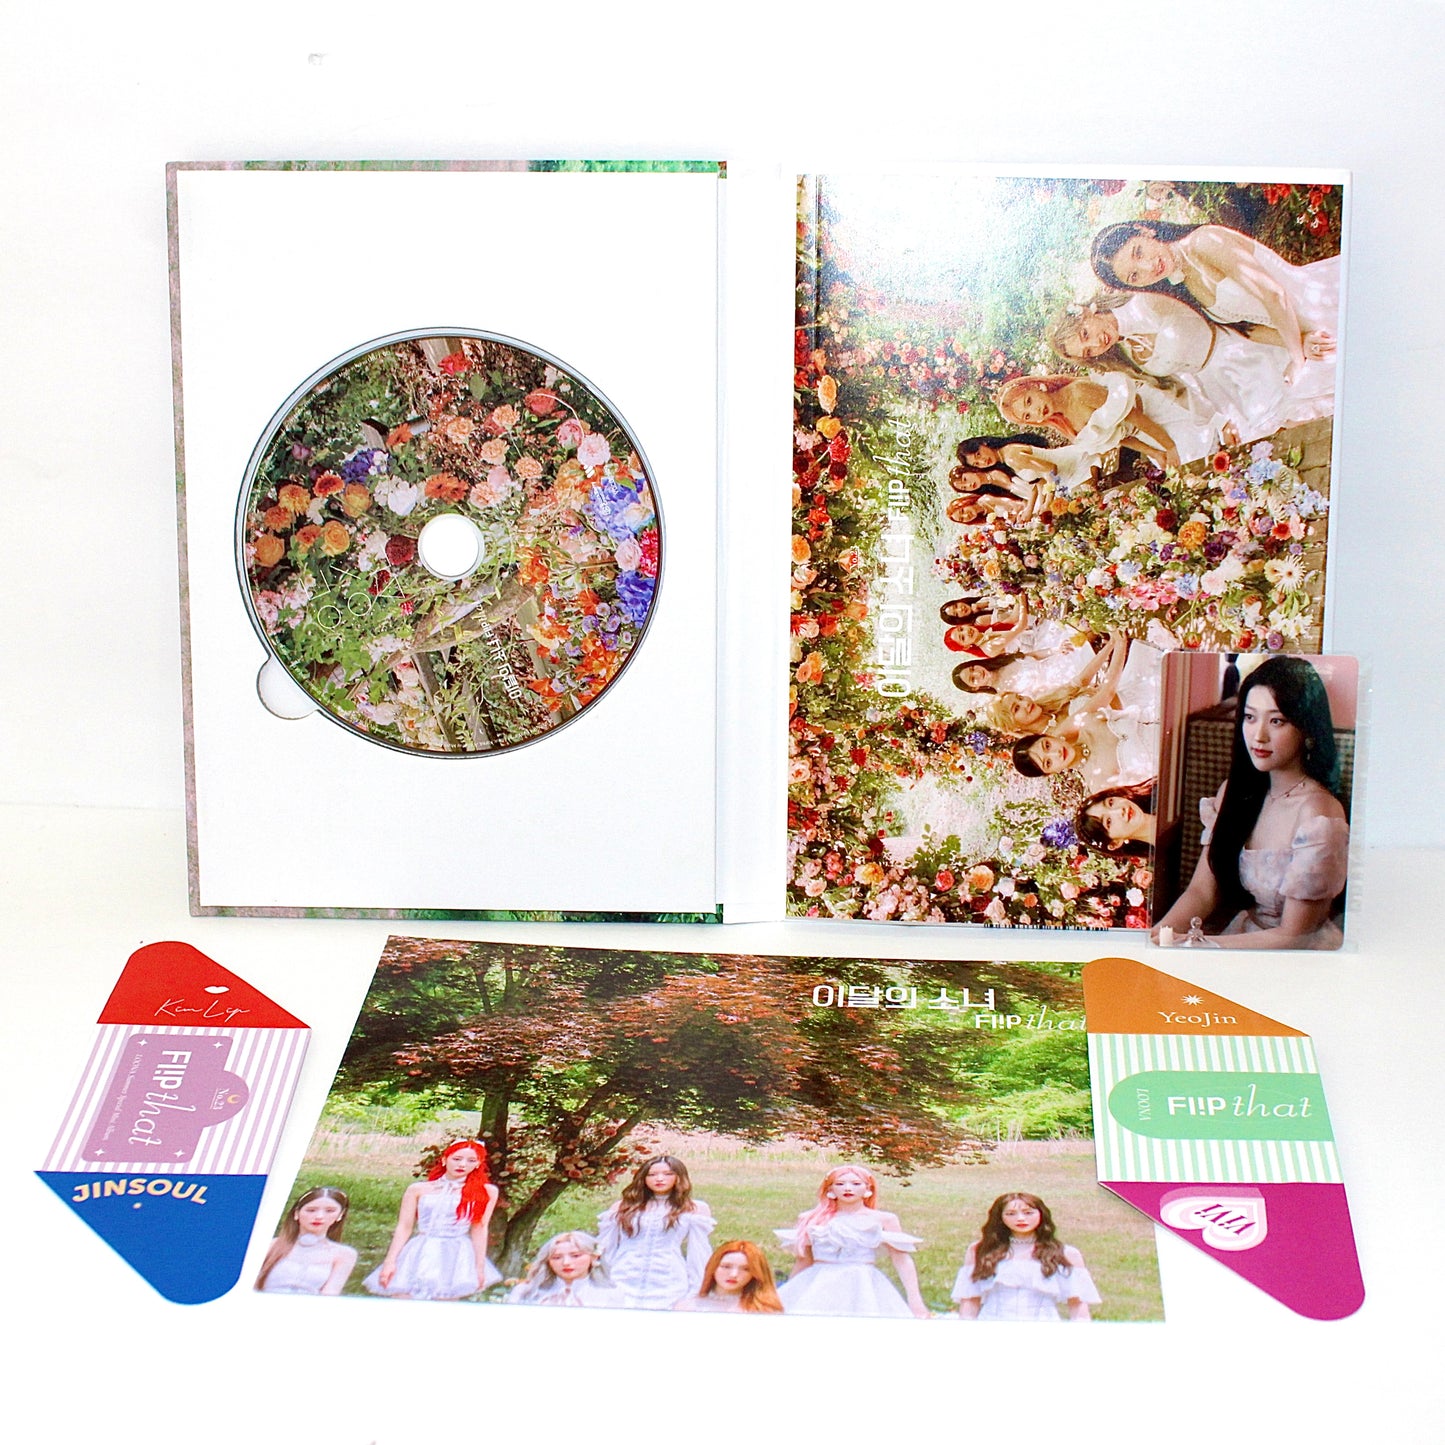 LOONA Special Summer Mini Album: Flip That | B Ver.